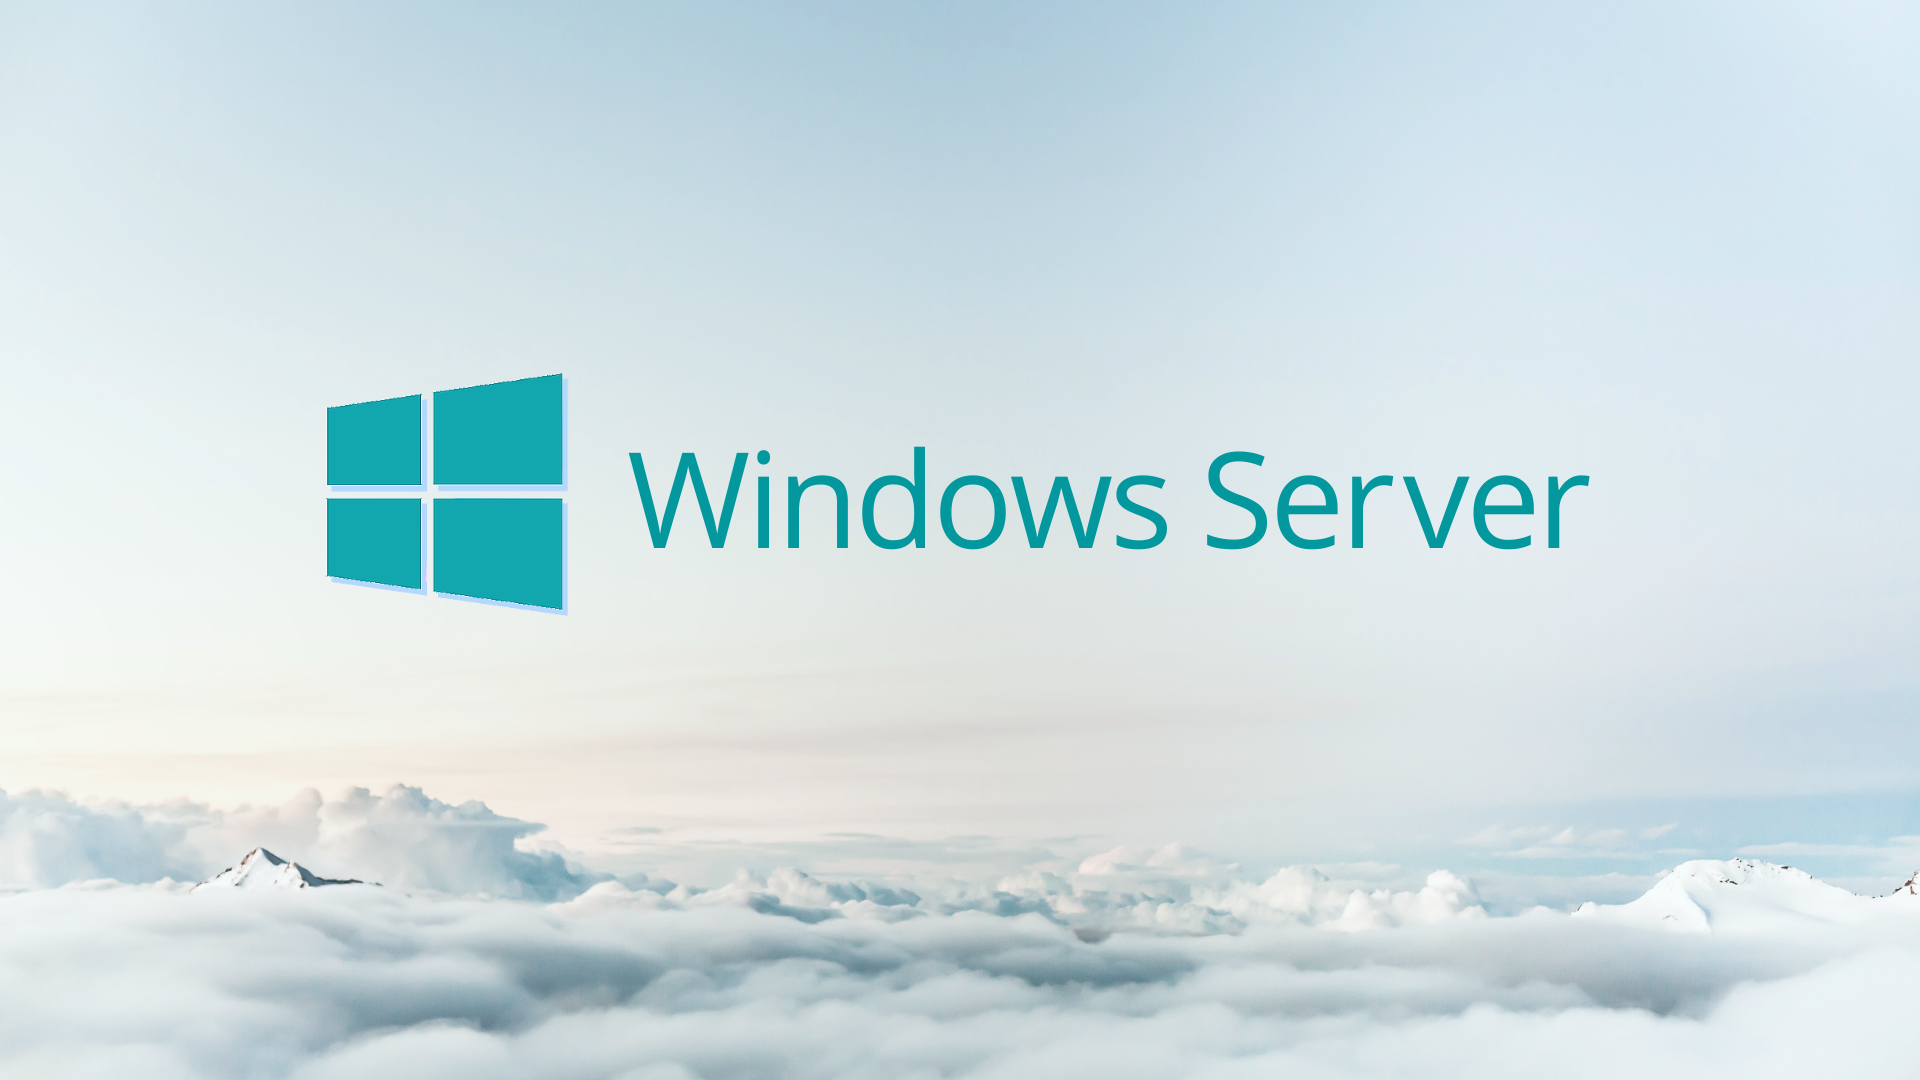 Windows Server больше не будет обновляться дважды в год, подтверждает